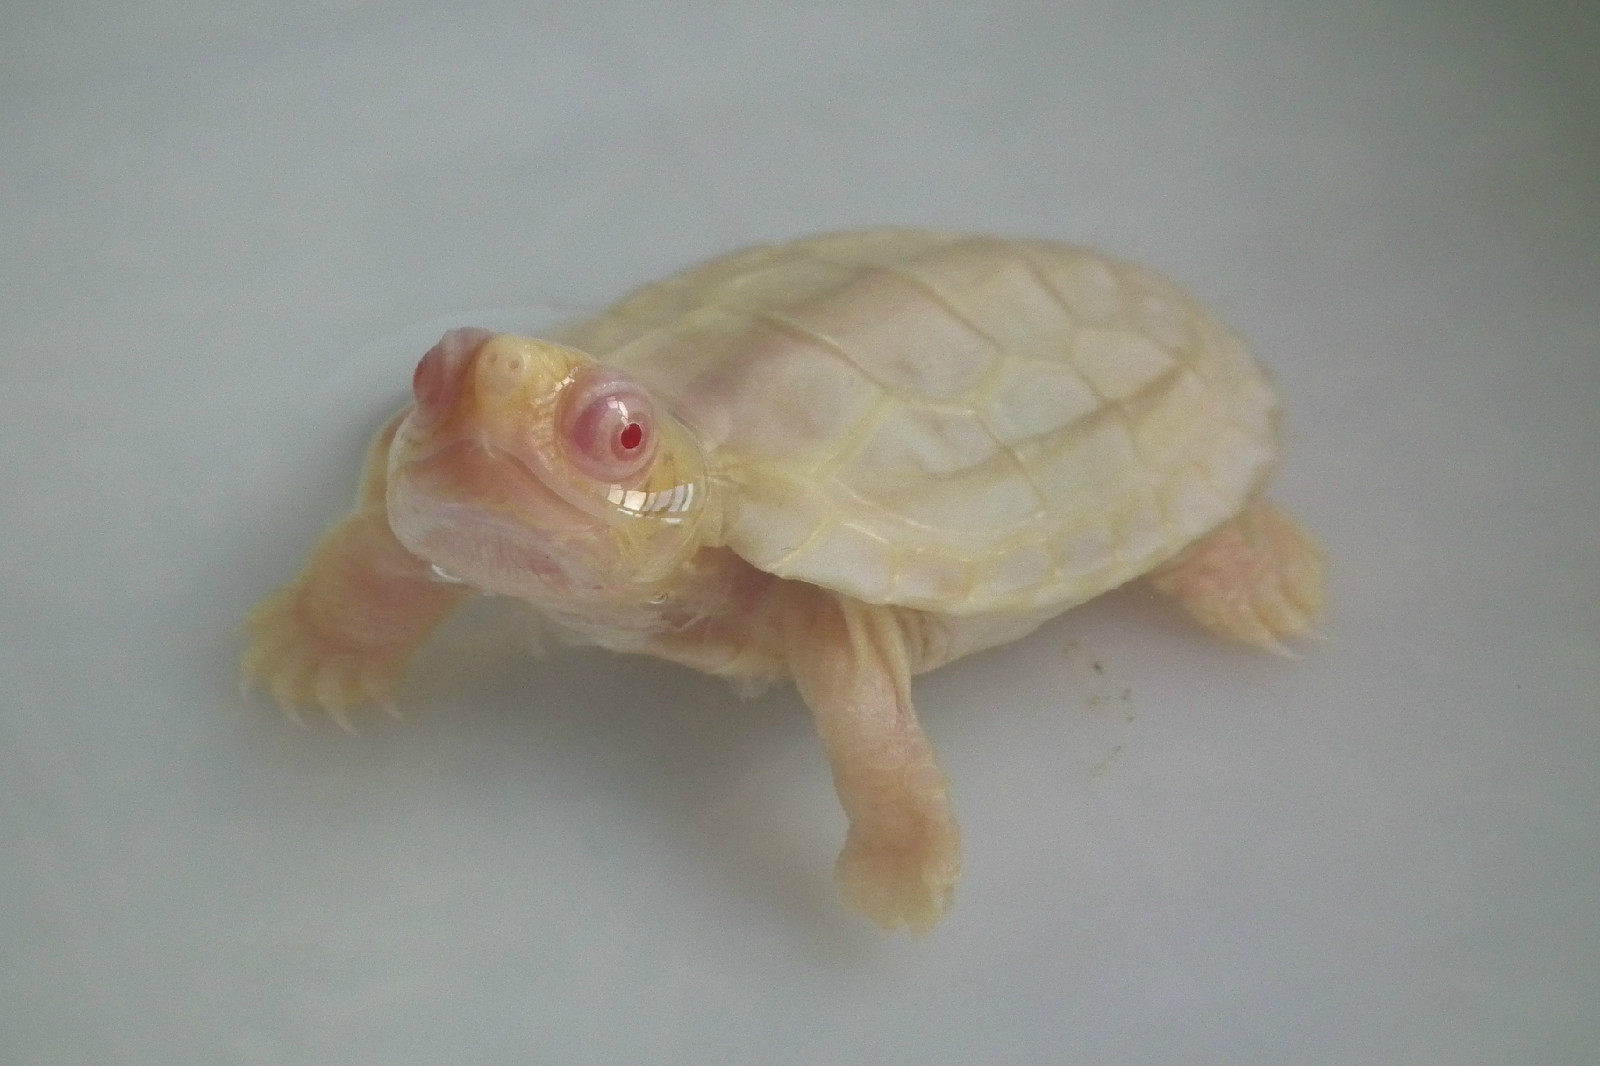 折叠 编辑本段 发病特征 发病乌龟大多壳白或黄,眼睛红色,除此之外别